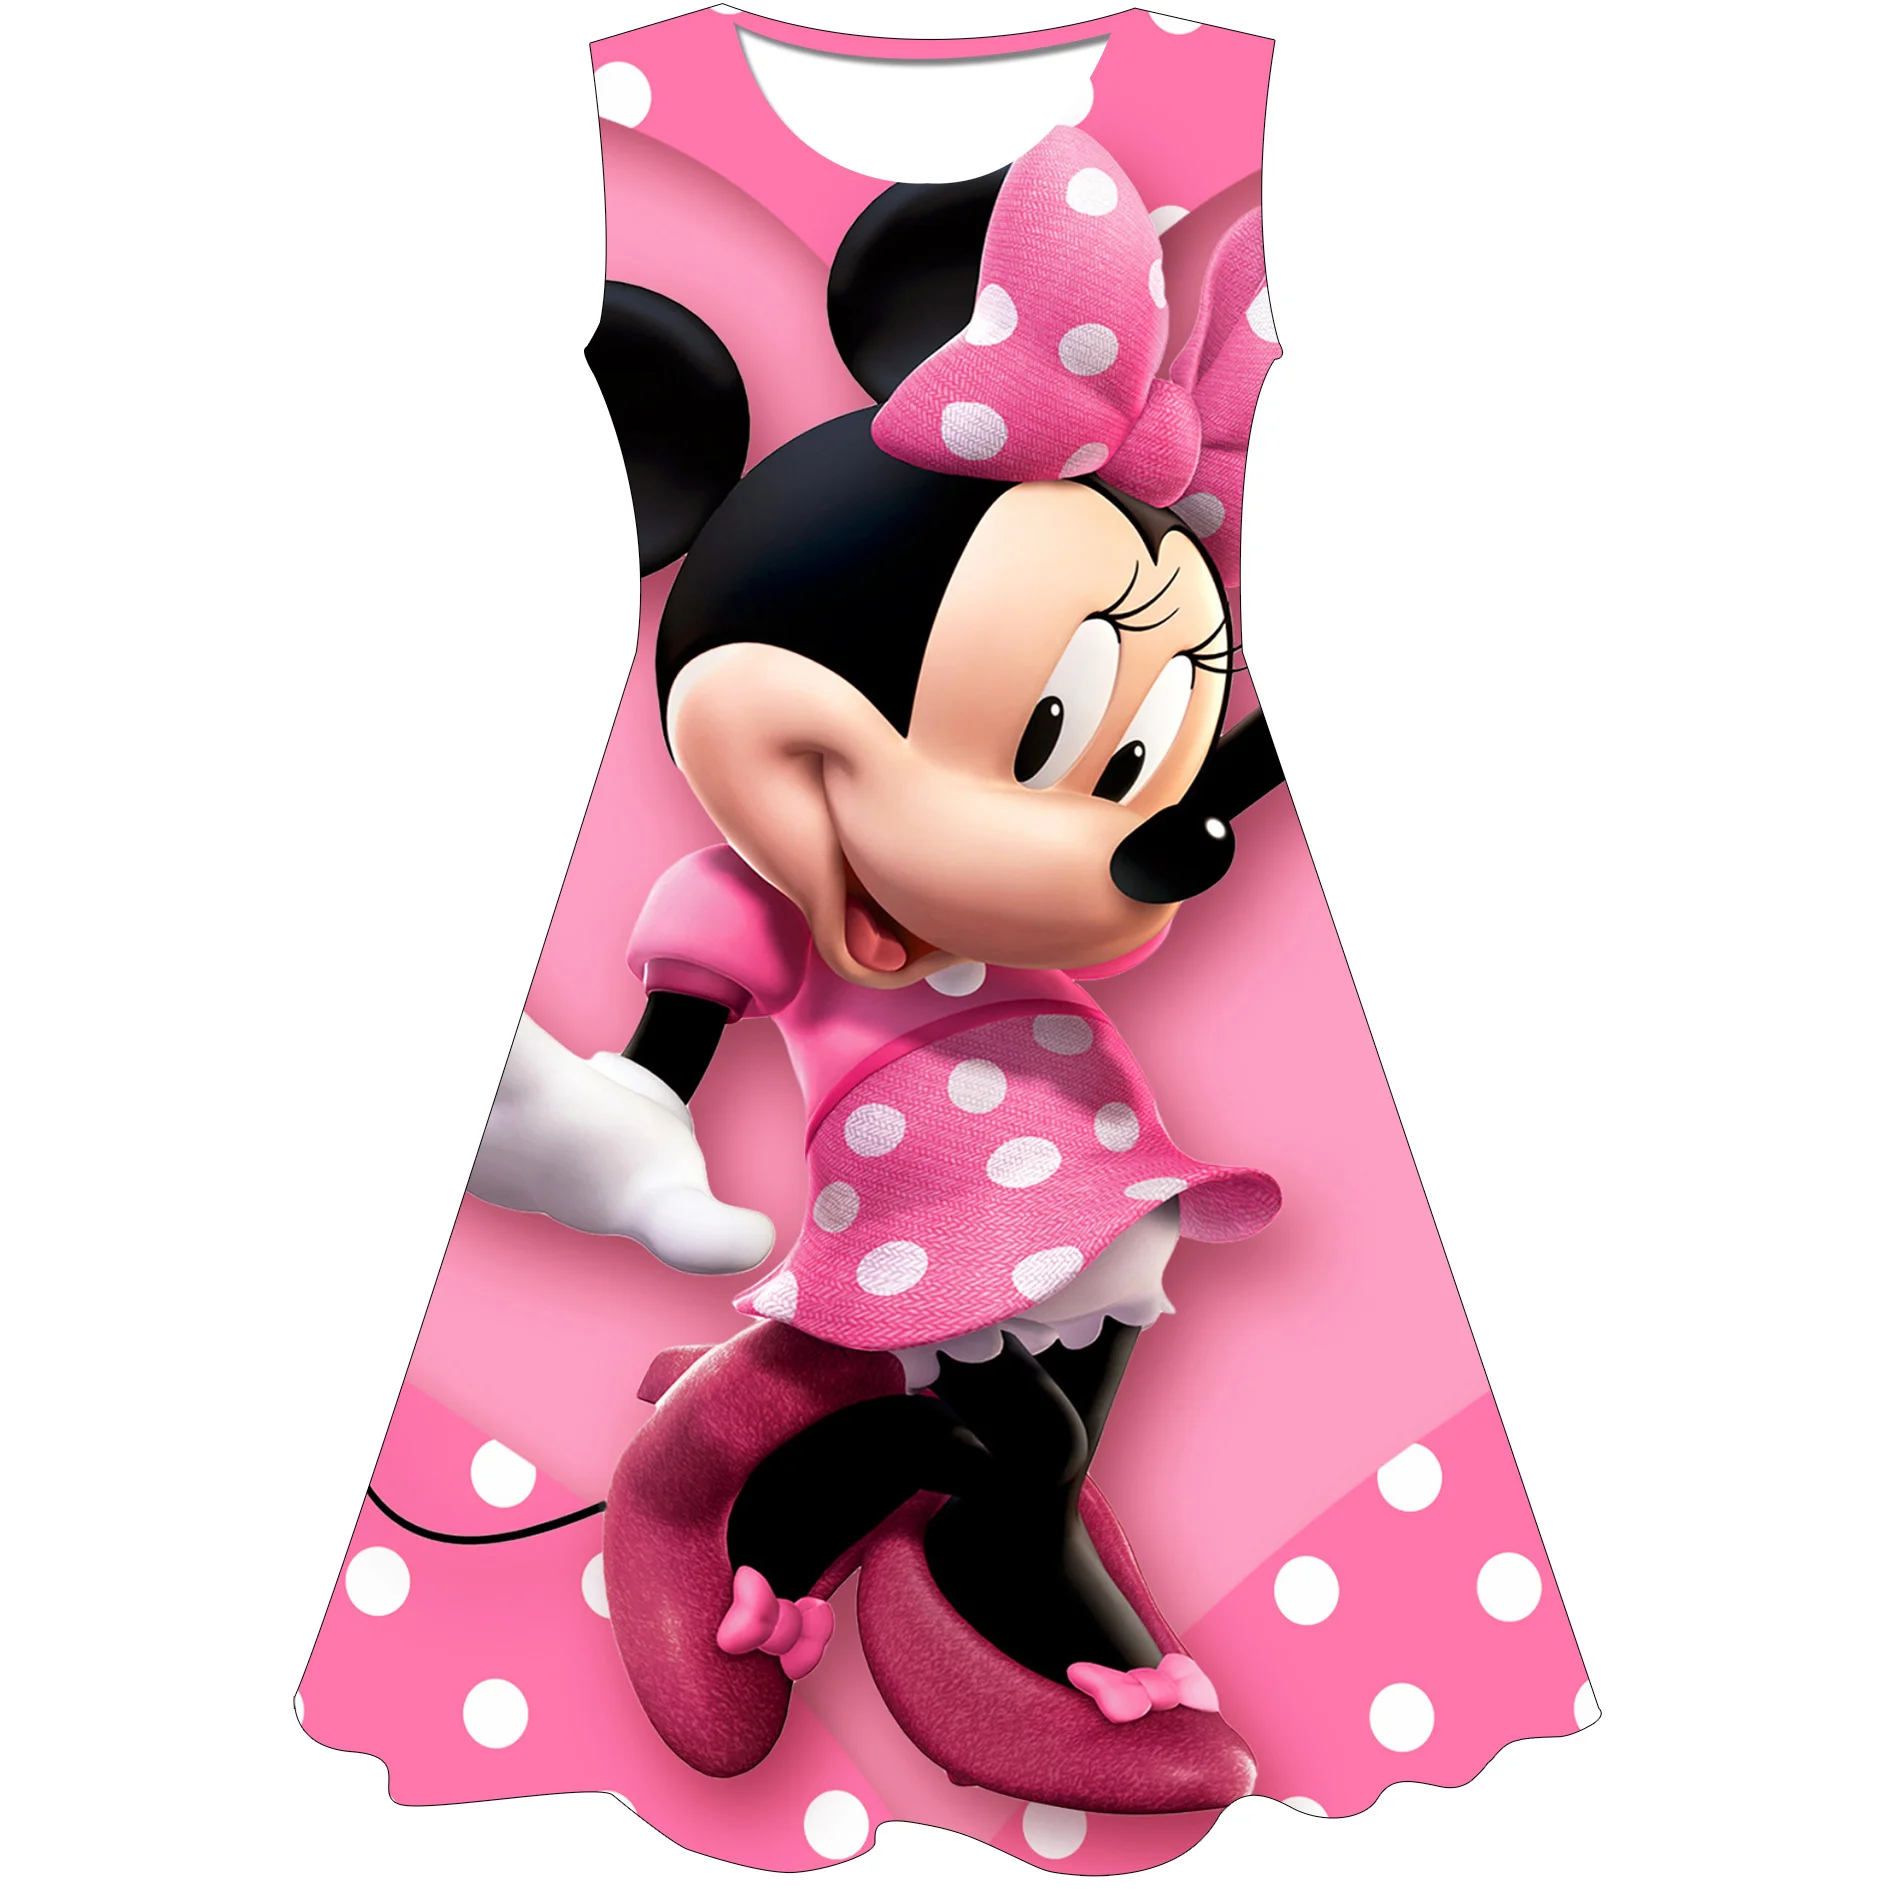 Minnie Mouse Princess Baby Costume neonata primo compleanno vestito gioco  di ruolo Party Wear Infant 1 2 5 anni vestito da bambina